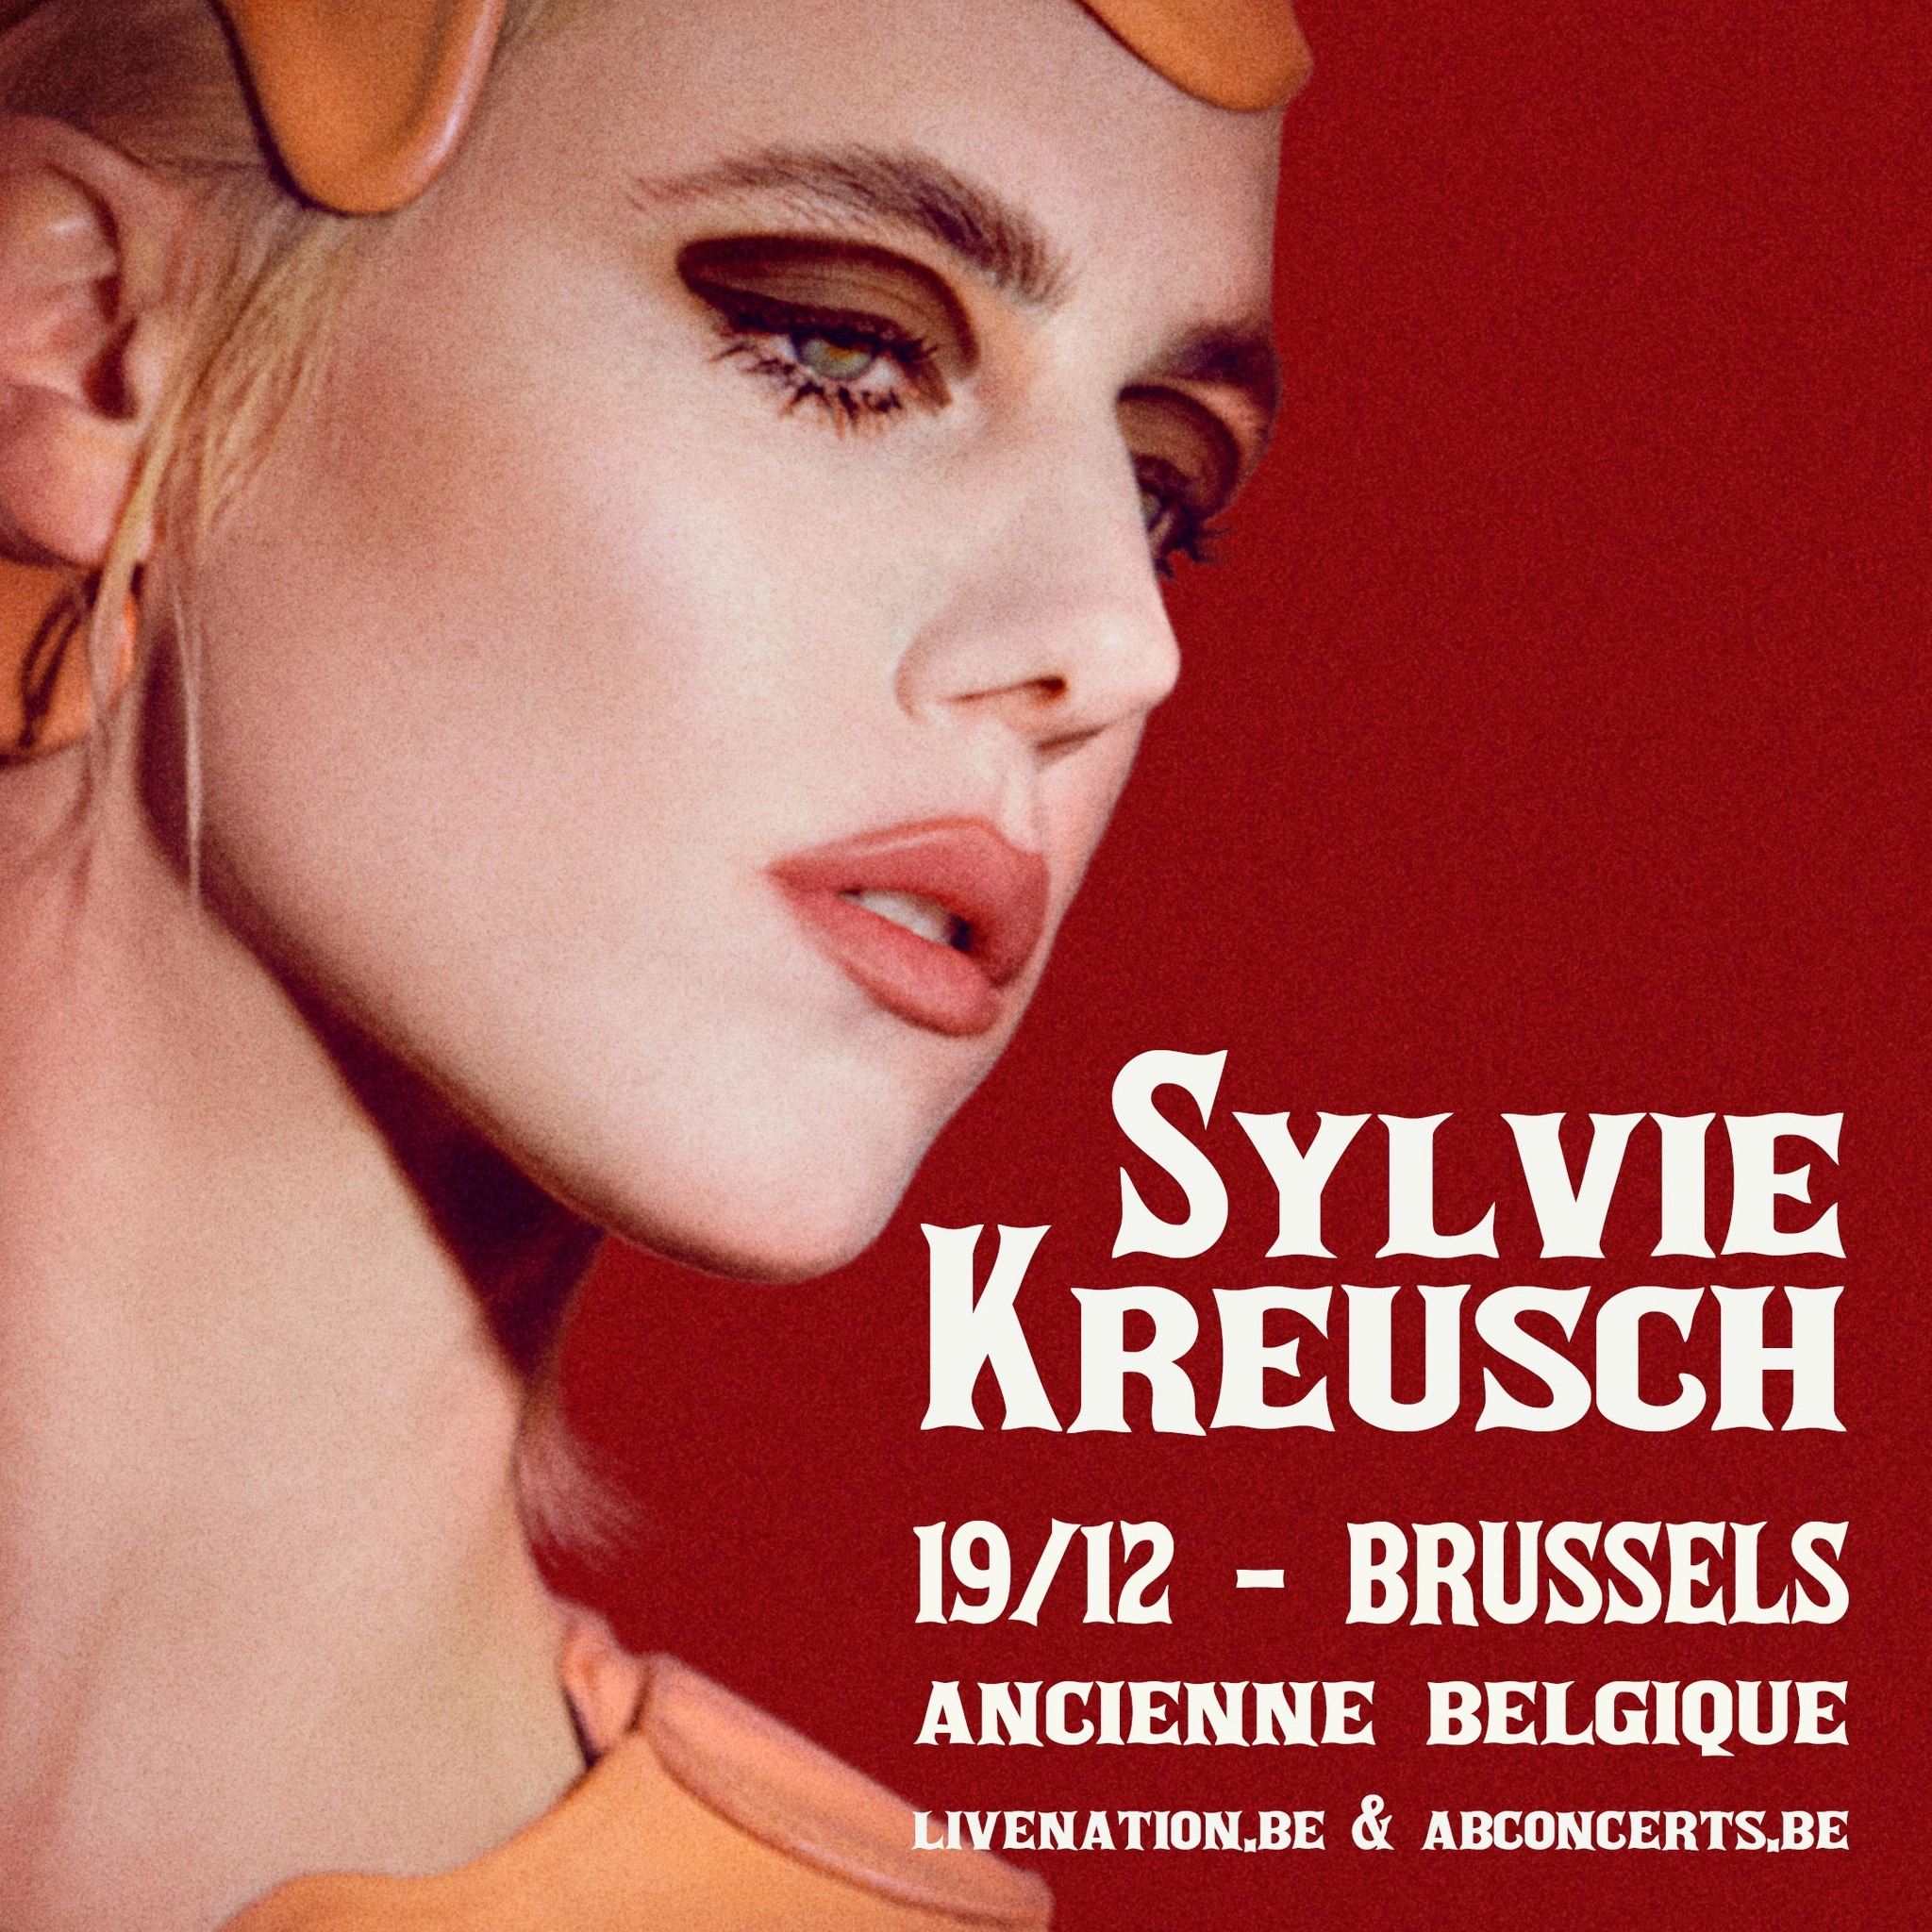 Sylvie Kreusch in der Ancienne Belgique Tickets